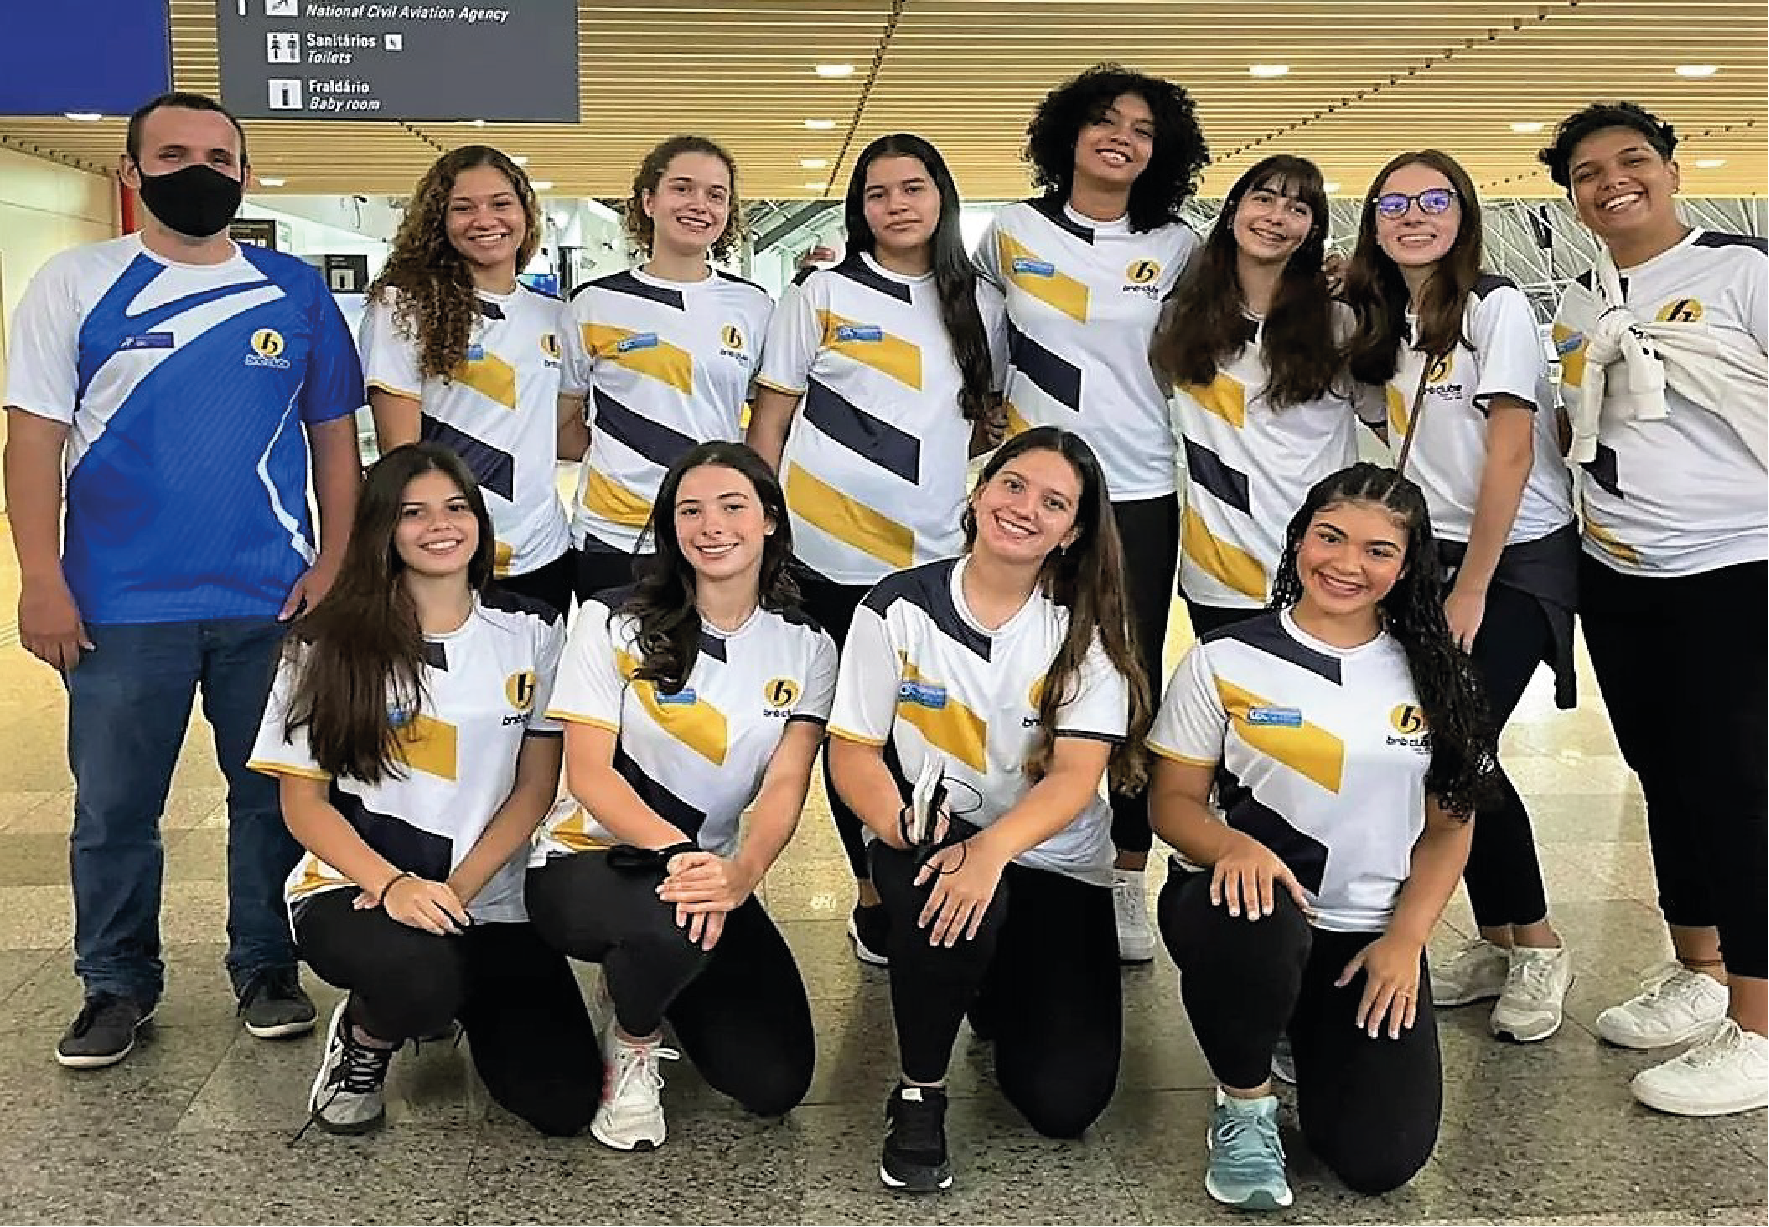 Sogipa: Equipe de vôlei disputa Campeonato Brasileiro Interclubes Sub-17,  em Belo Horizonte (MG)